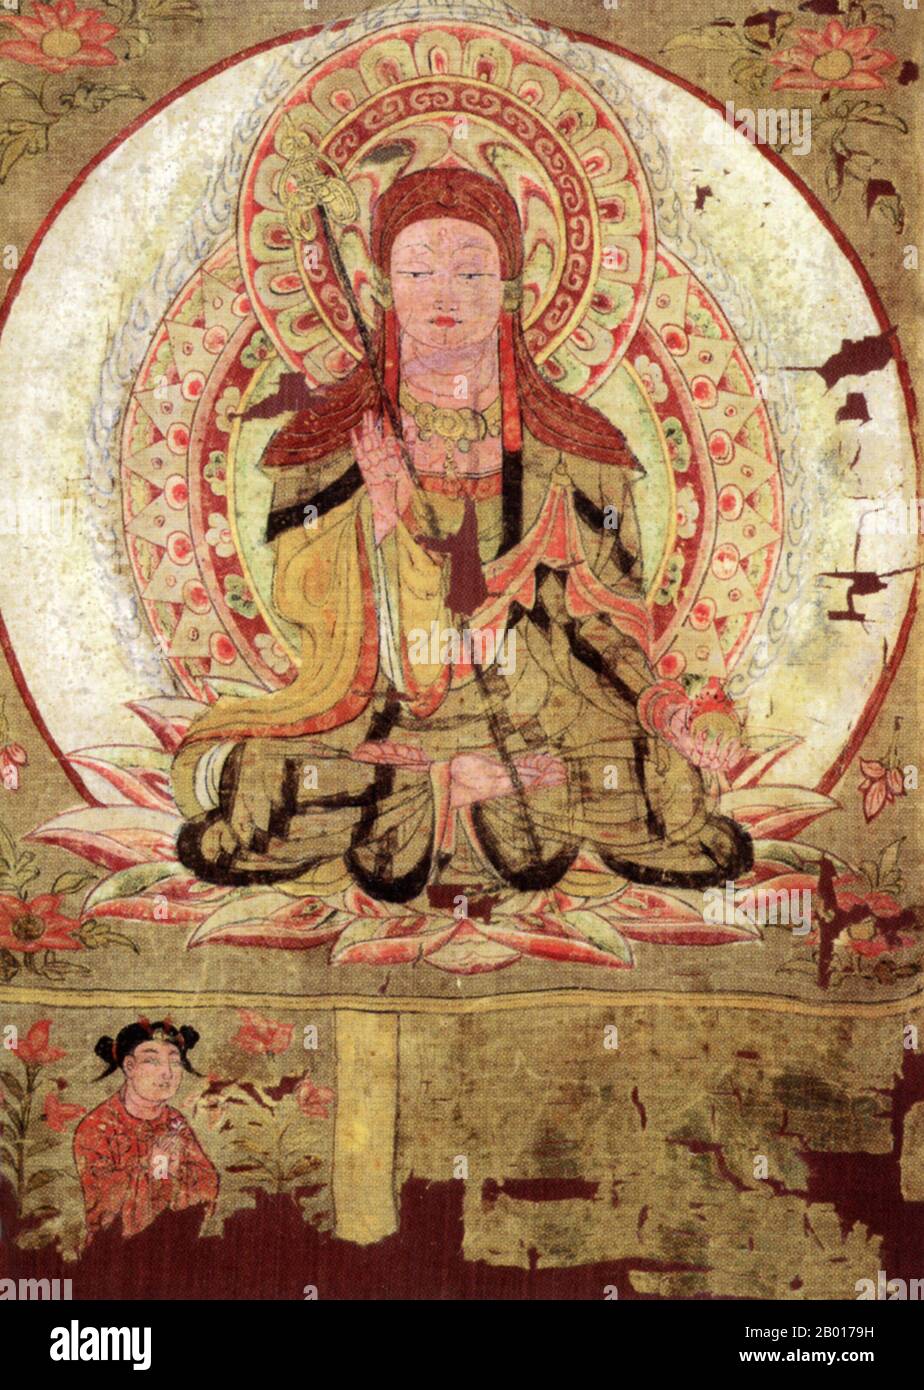 Chine : le bodhisattva Ksitigarbha, identifié par une robe patchée et une tête rasée.Toile de défilement suspendue, Grottes de Mogao, Dunhuang, 9th siècle.Ksitigarbha est un bodhisattva principalement vénéré dans le bouddhisme d'Asie de l'est, habituellement dépeint comme un moine bouddhiste en Orient.Le nom peut être traduit par « Earth Treasury ».Ksitigarbha est connu pour son vœu de prendre la responsabilité de l'instruction de tous les êtres dans les six mondes entre la mort de Gautama (Sakyamuni) Bouddha et la montée de Maitreya Bouddha, ainsi que son vœu de ne pas atteindre la bouddhéité jusqu'à ce que toutes les cellules soient vidées. Banque D'Images